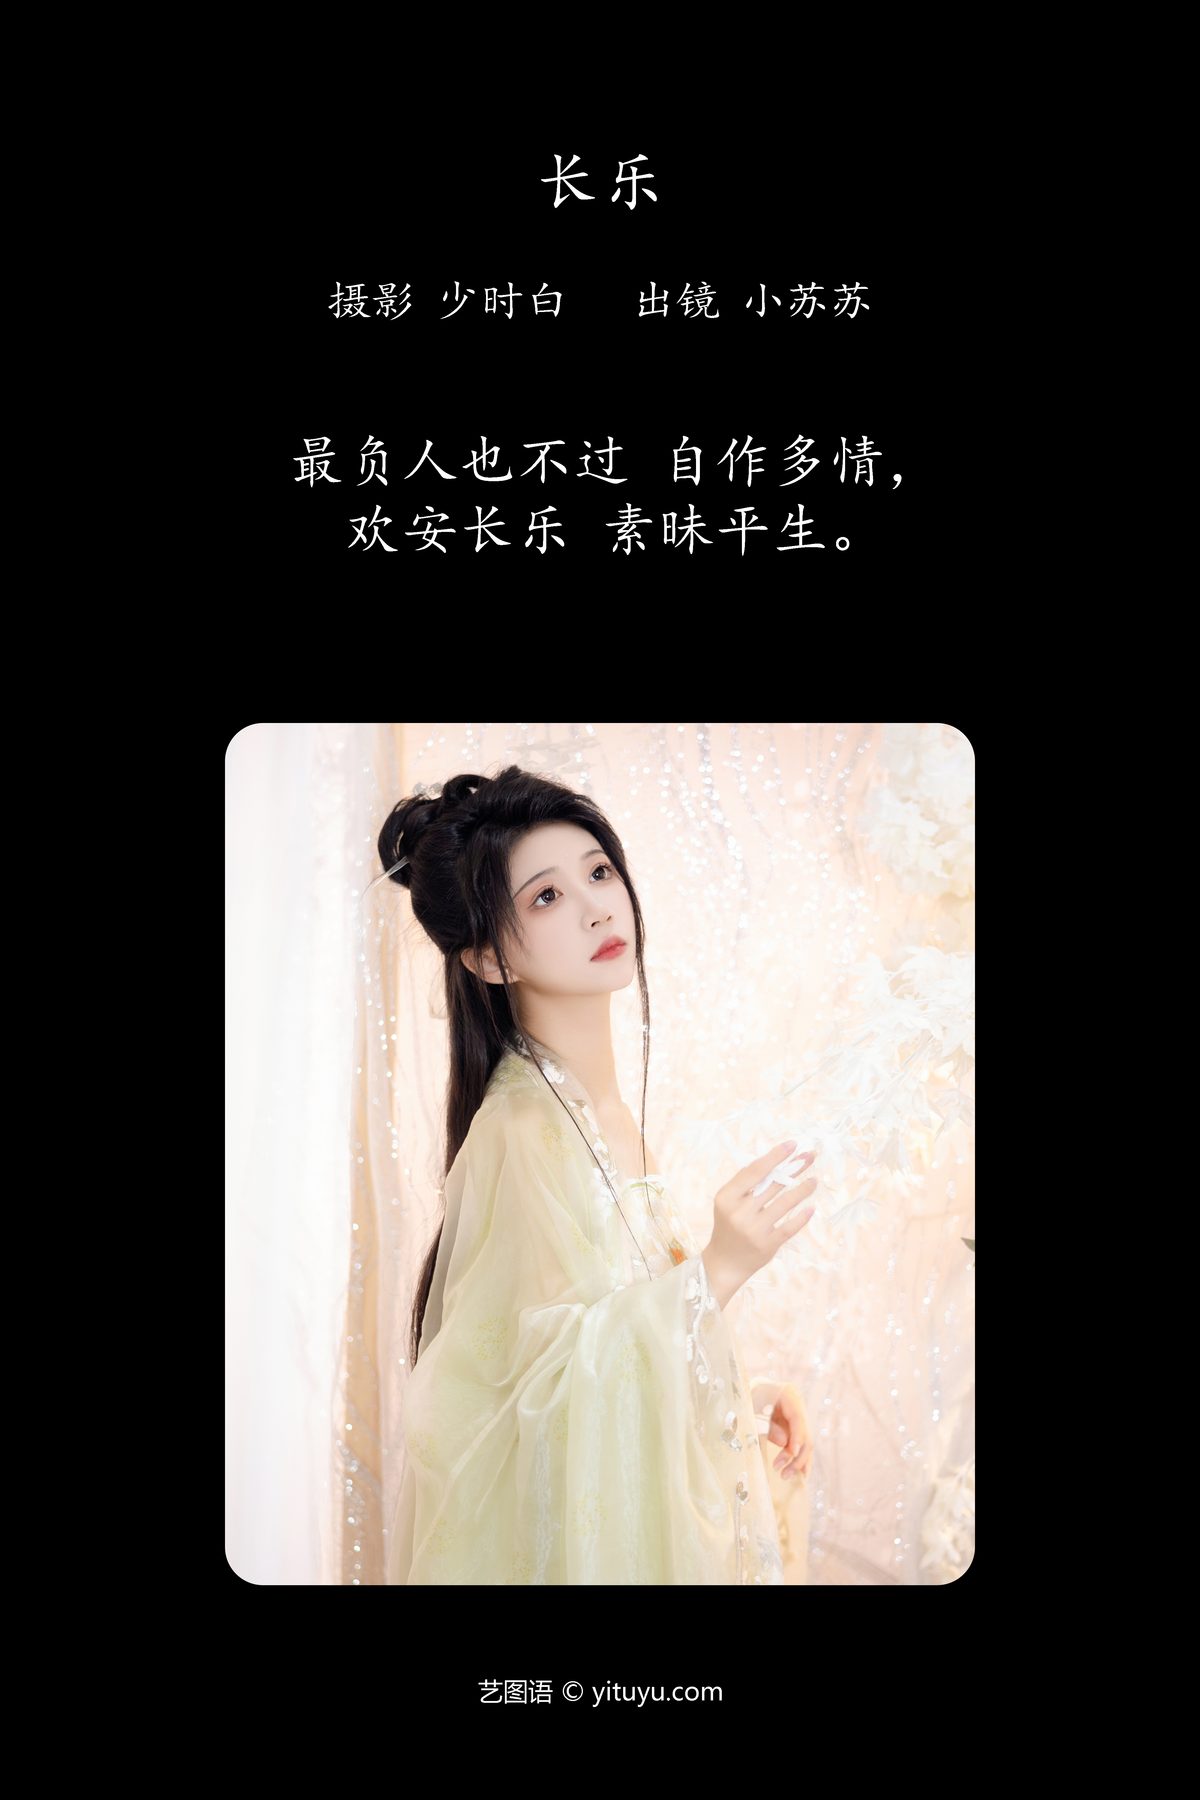 YiTuYu艺图语 Vol 4143 Qi Luo Sheng De Xiao Su Su 0002 6121657036.jpg